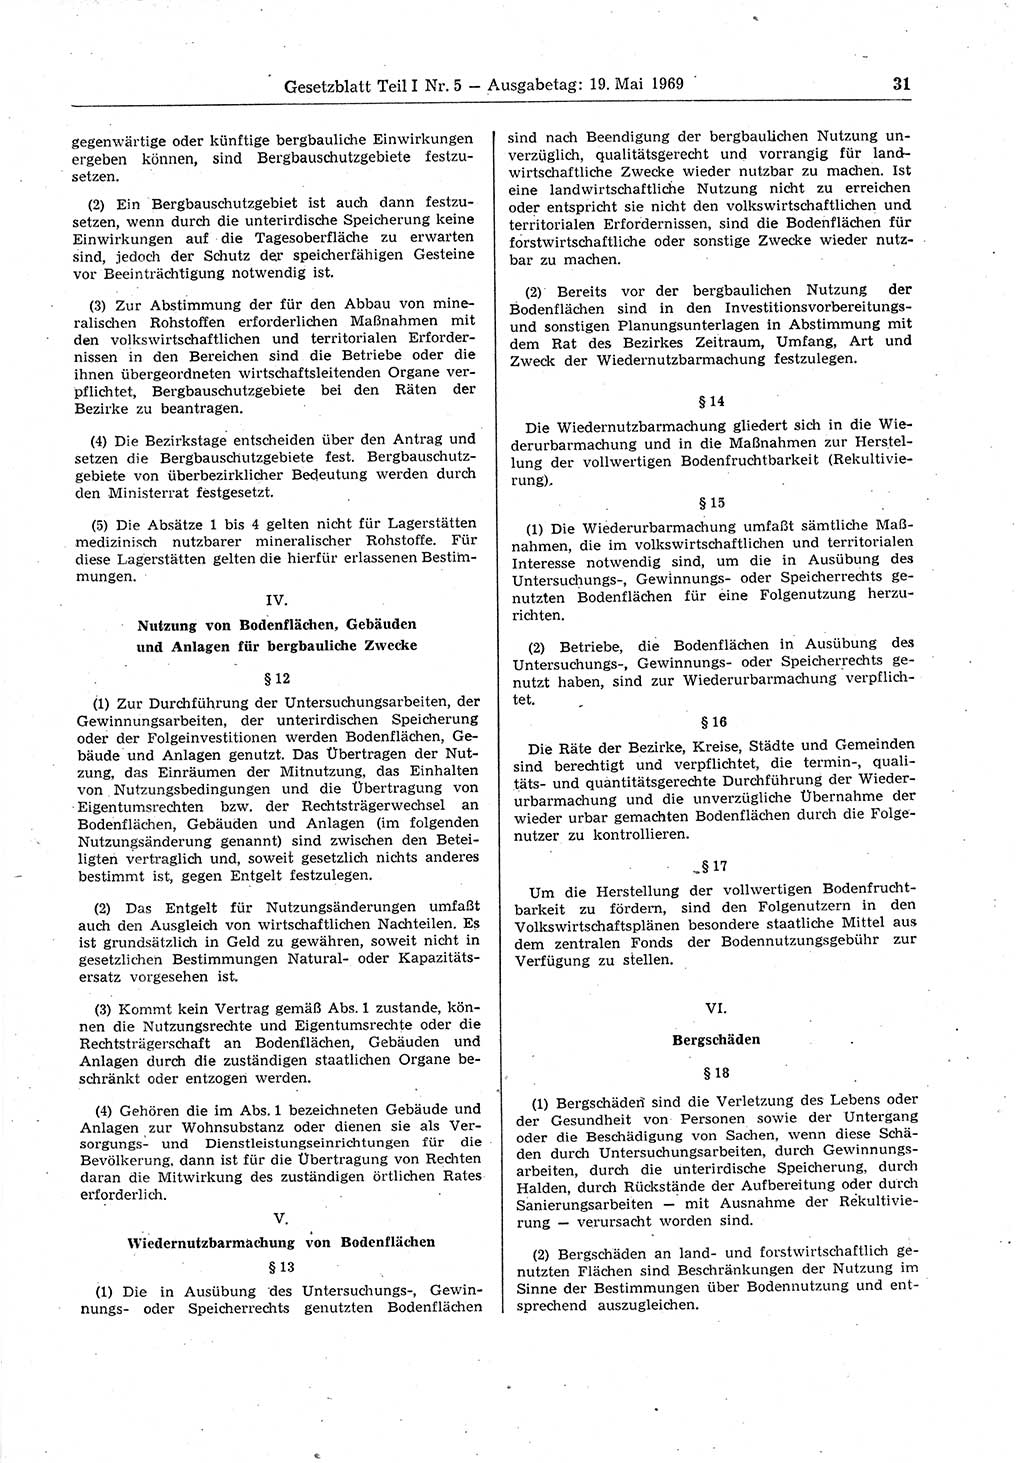 Gesetzblatt (GBl.) der Deutschen Demokratischen Republik (DDR) Teil Ⅰ 1969, Seite 31 (GBl. DDR Ⅰ 1969, S. 31)